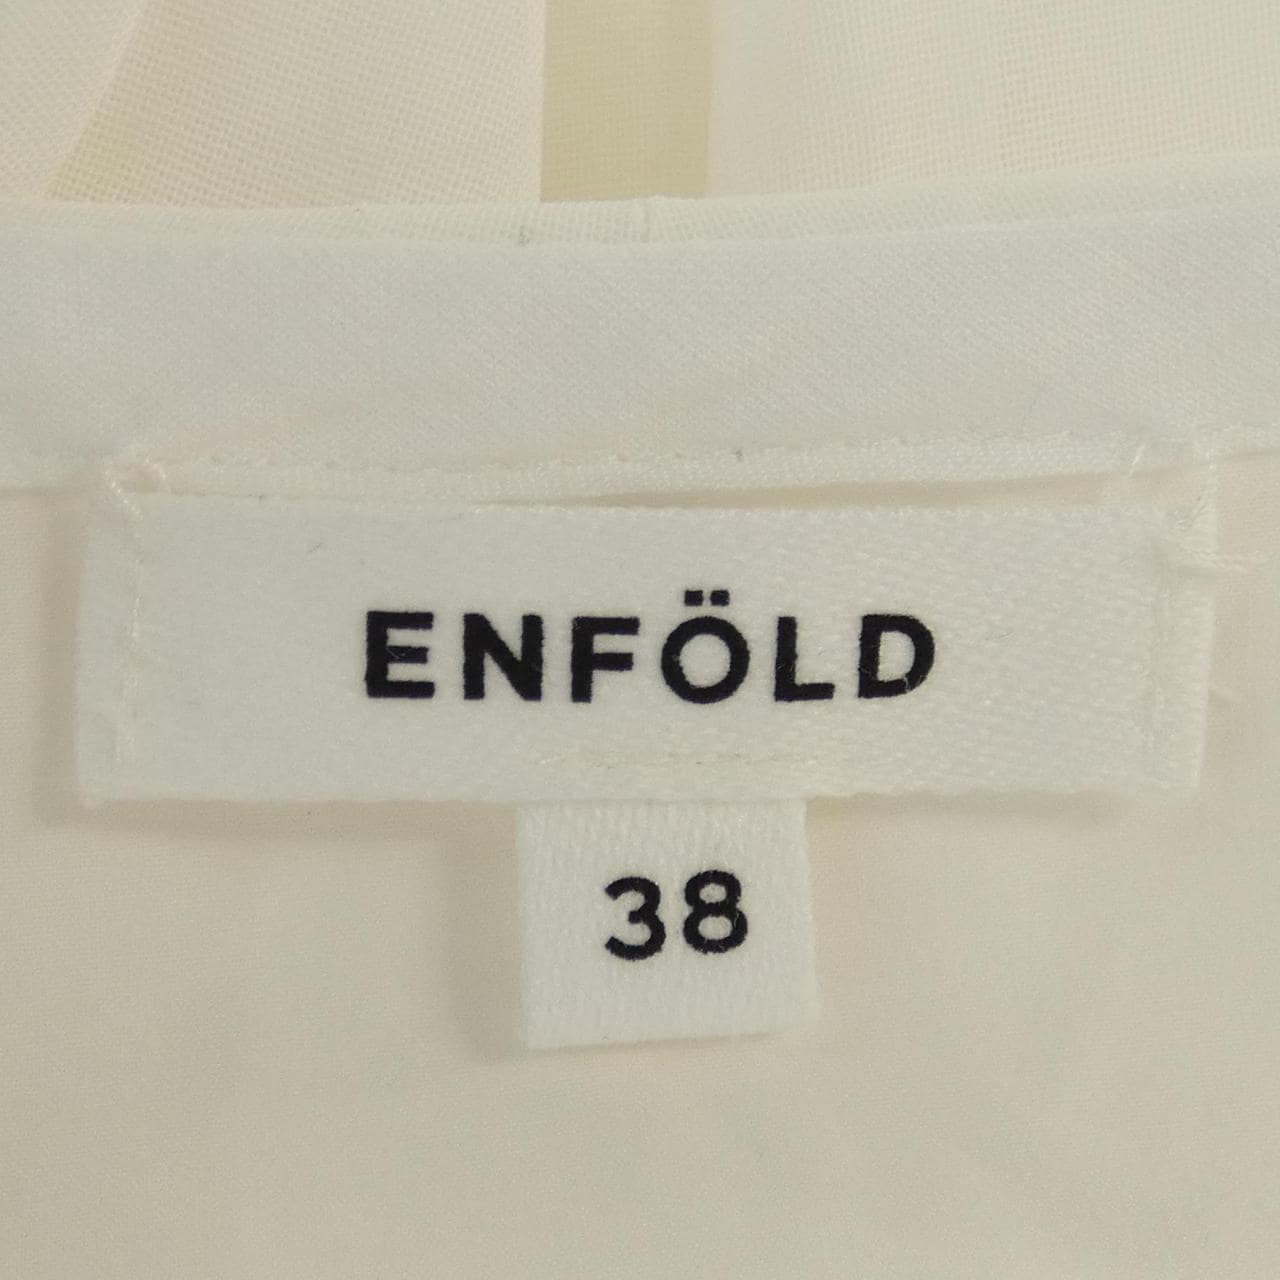 Enford ENFOLD衬衫